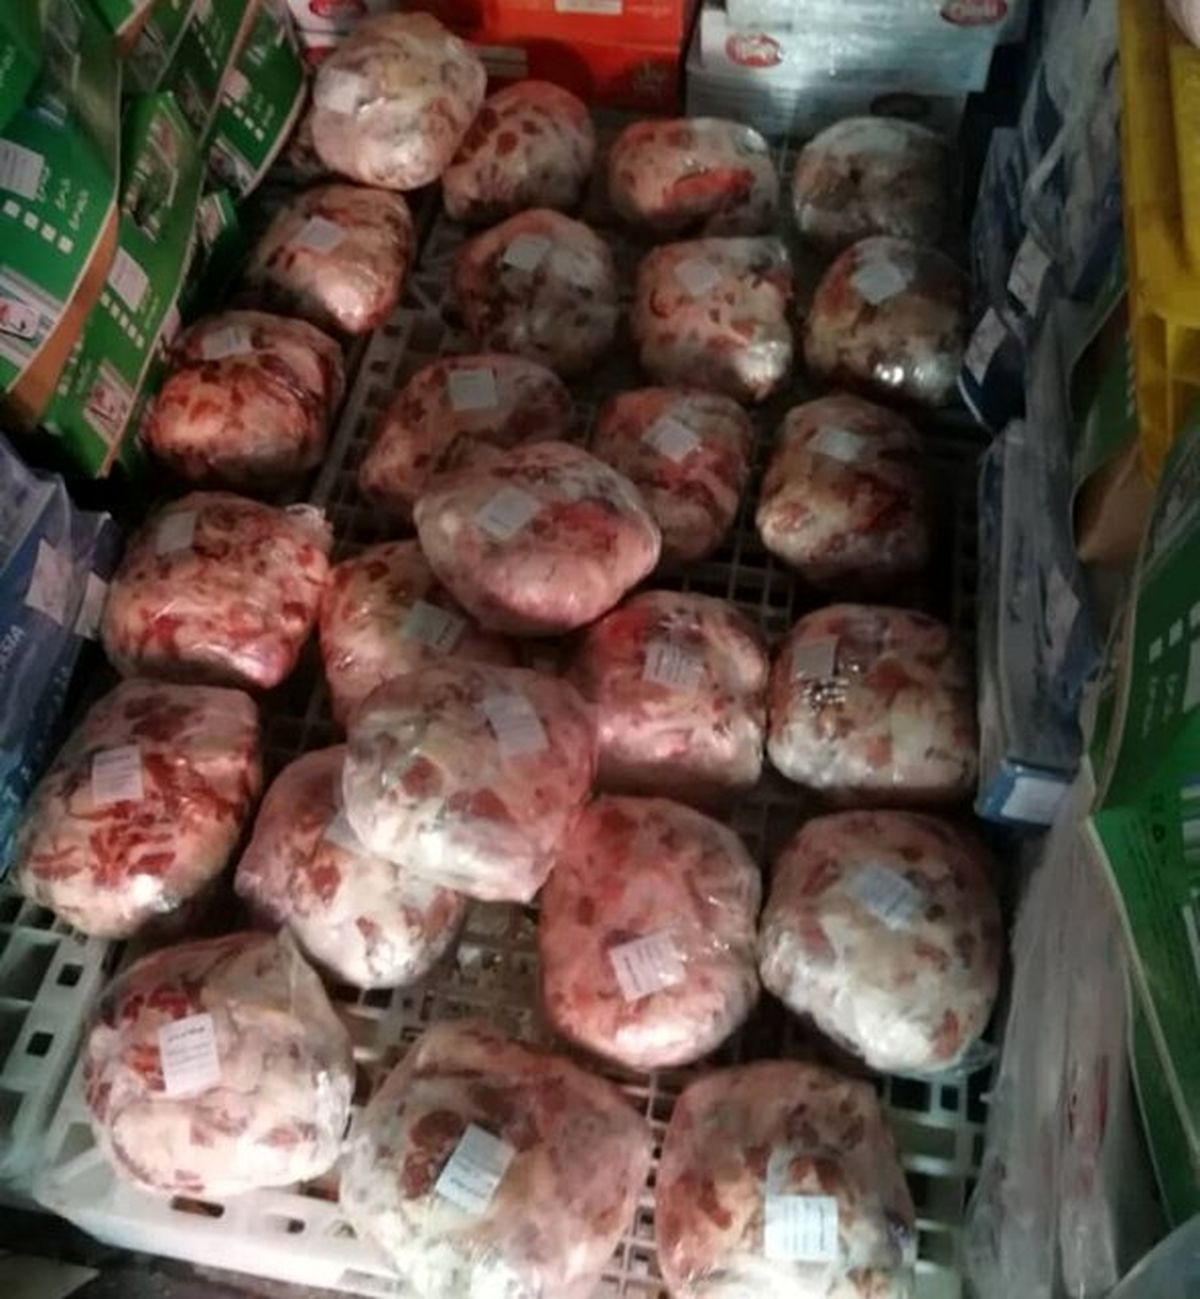 کشف و توقیف ۱۲ تن گوشت فاسد در مشهد/۶ نفر بازداشت شدند